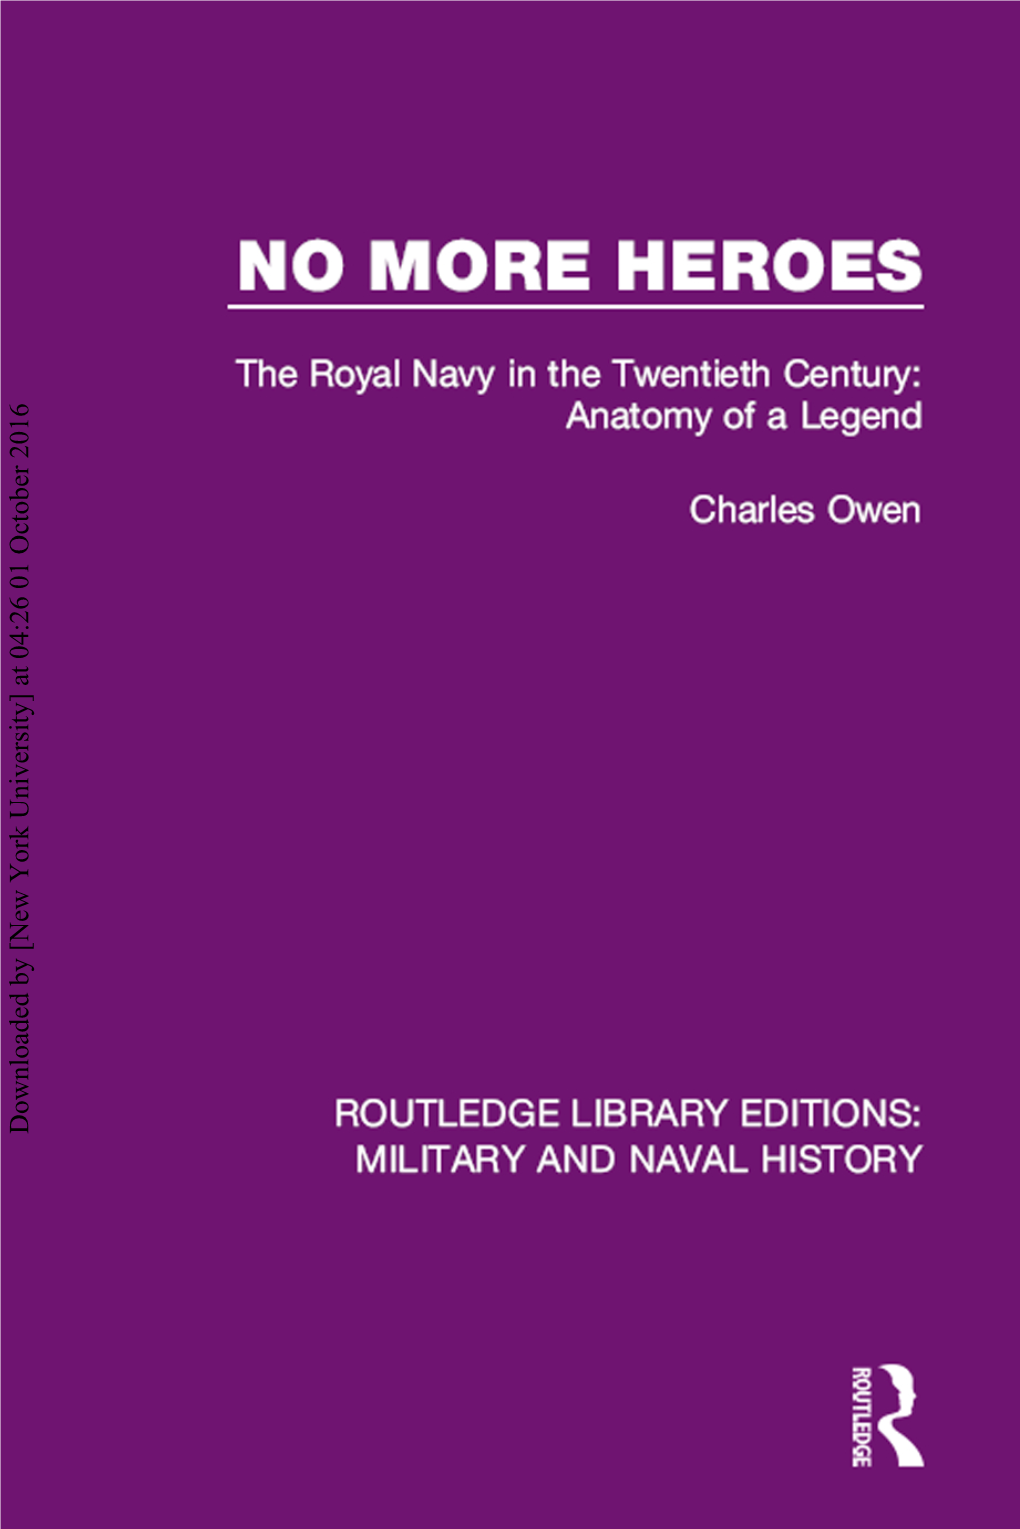 NO MORE HEROES: the Royal Navy in the Twentieth Century